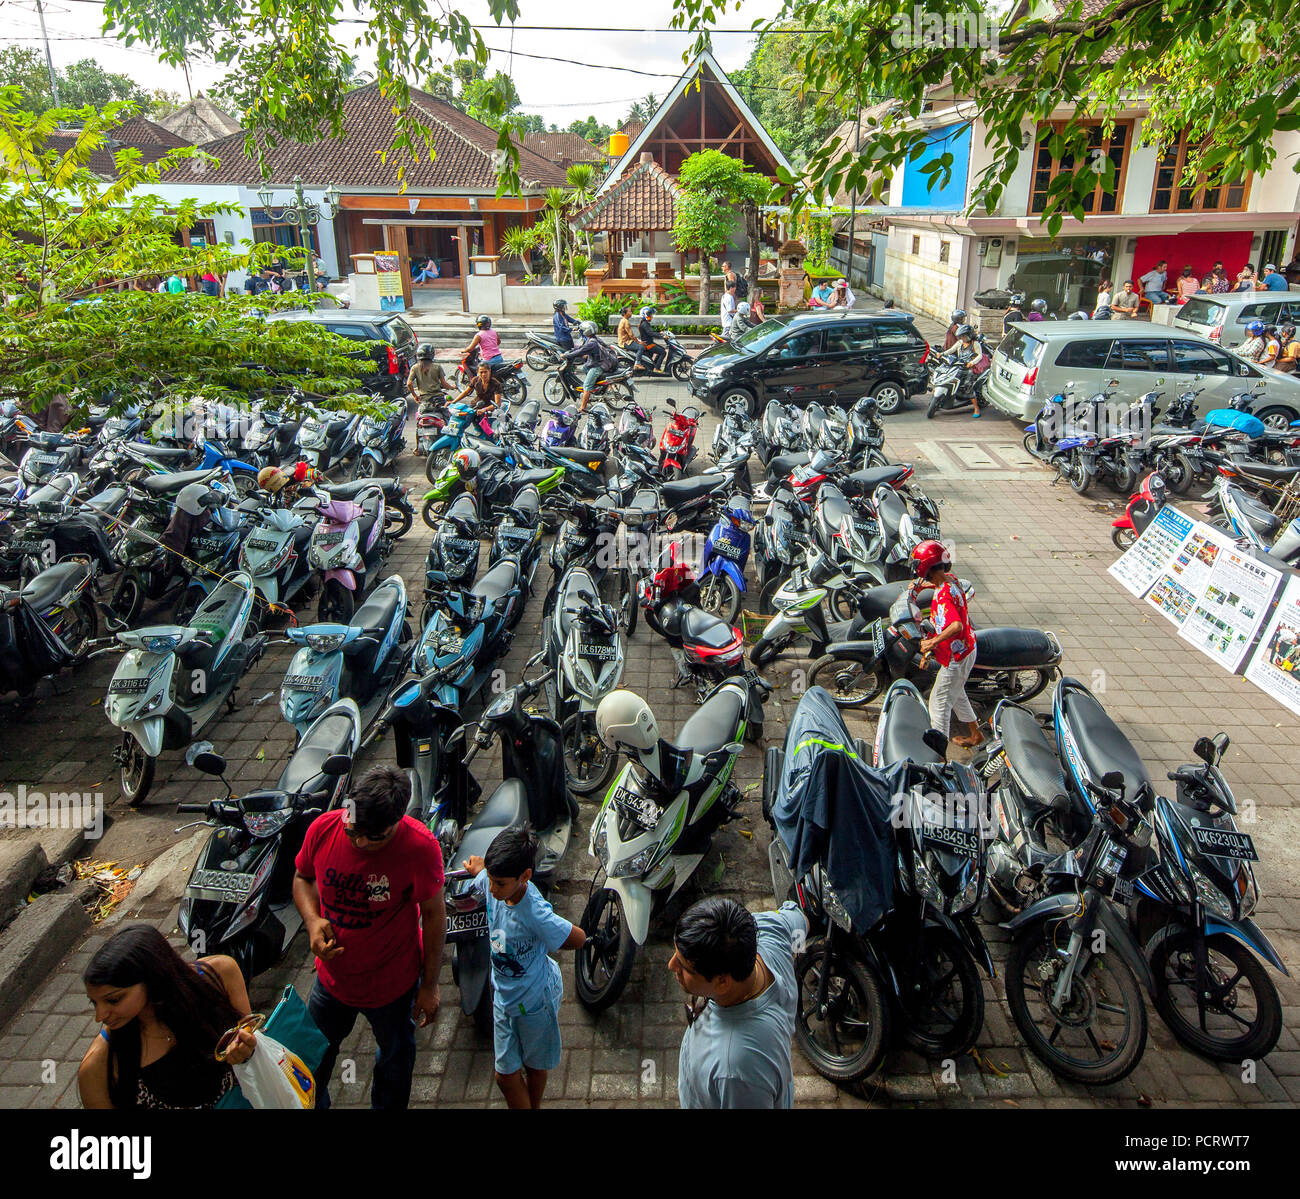 Motorrad parken, street scene, Motorräder und Roller auf einem Parkplatz in der Mitte von Ubud, Ubud, Bali, Indonesien, Asien Stockfoto